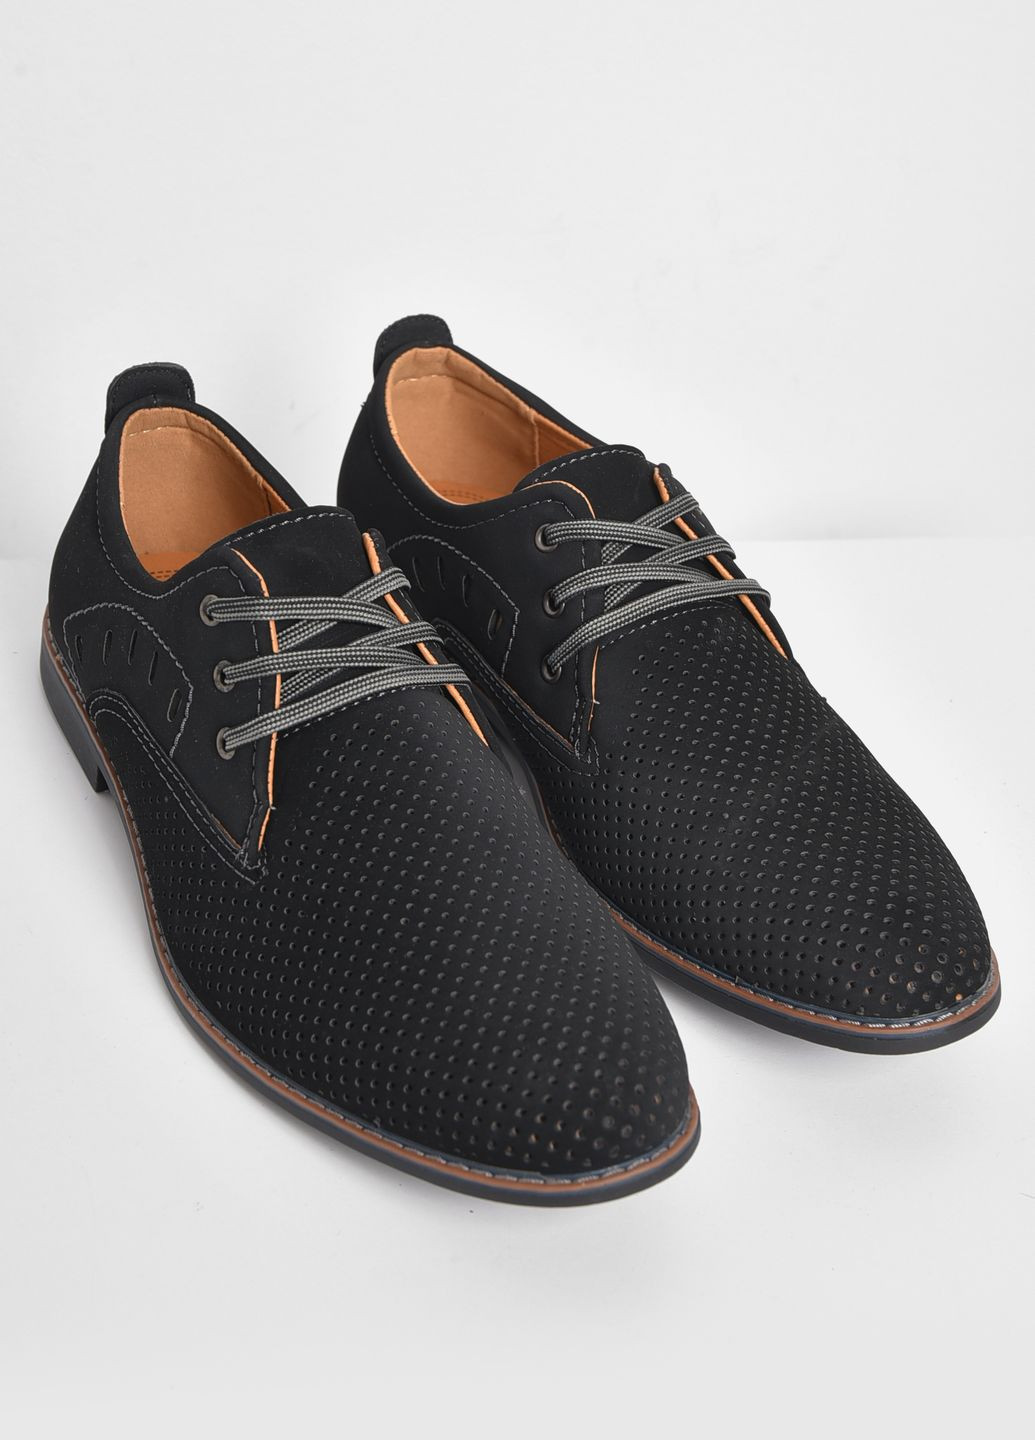 Черные классические туфли мужские черного цвета Let's Shop на шнурках